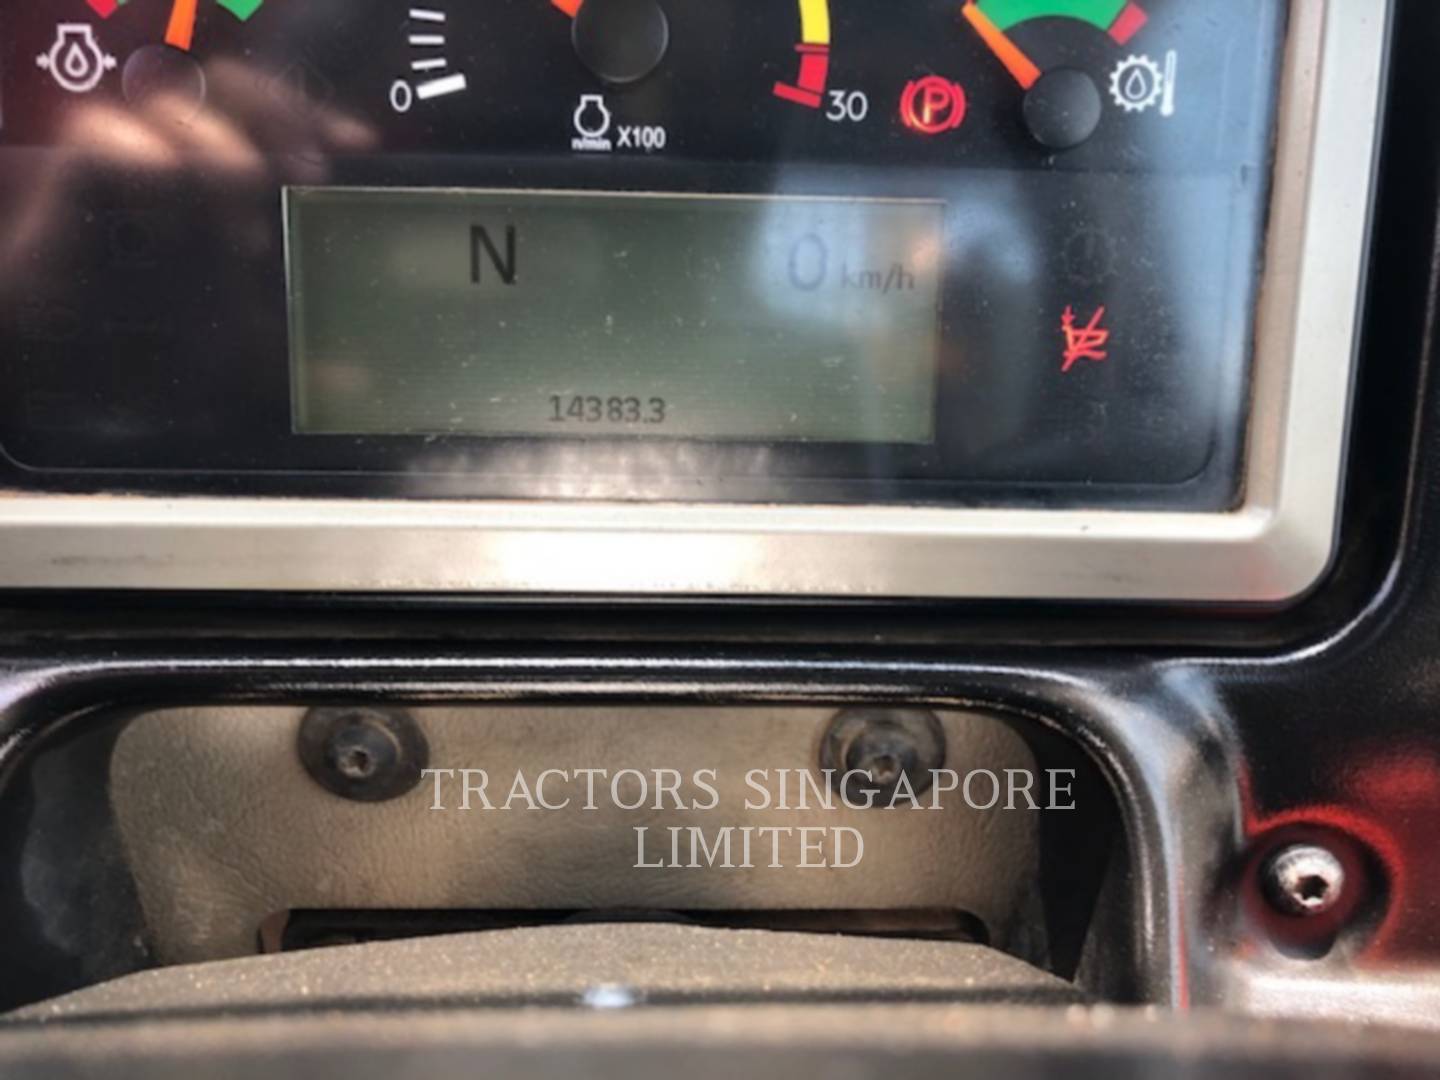 wtk?JHNyYz04NDlhOGJlNTY2ZjM1YjI1YjA5NDFkOGY3YTMxOTM1ZSYkdHh0PVRSQUNUT1JTJTIwU0lOR0FQT1JFJTIwTElNSVRFRCY0NjkyNw== 740B | Tractors Singapore